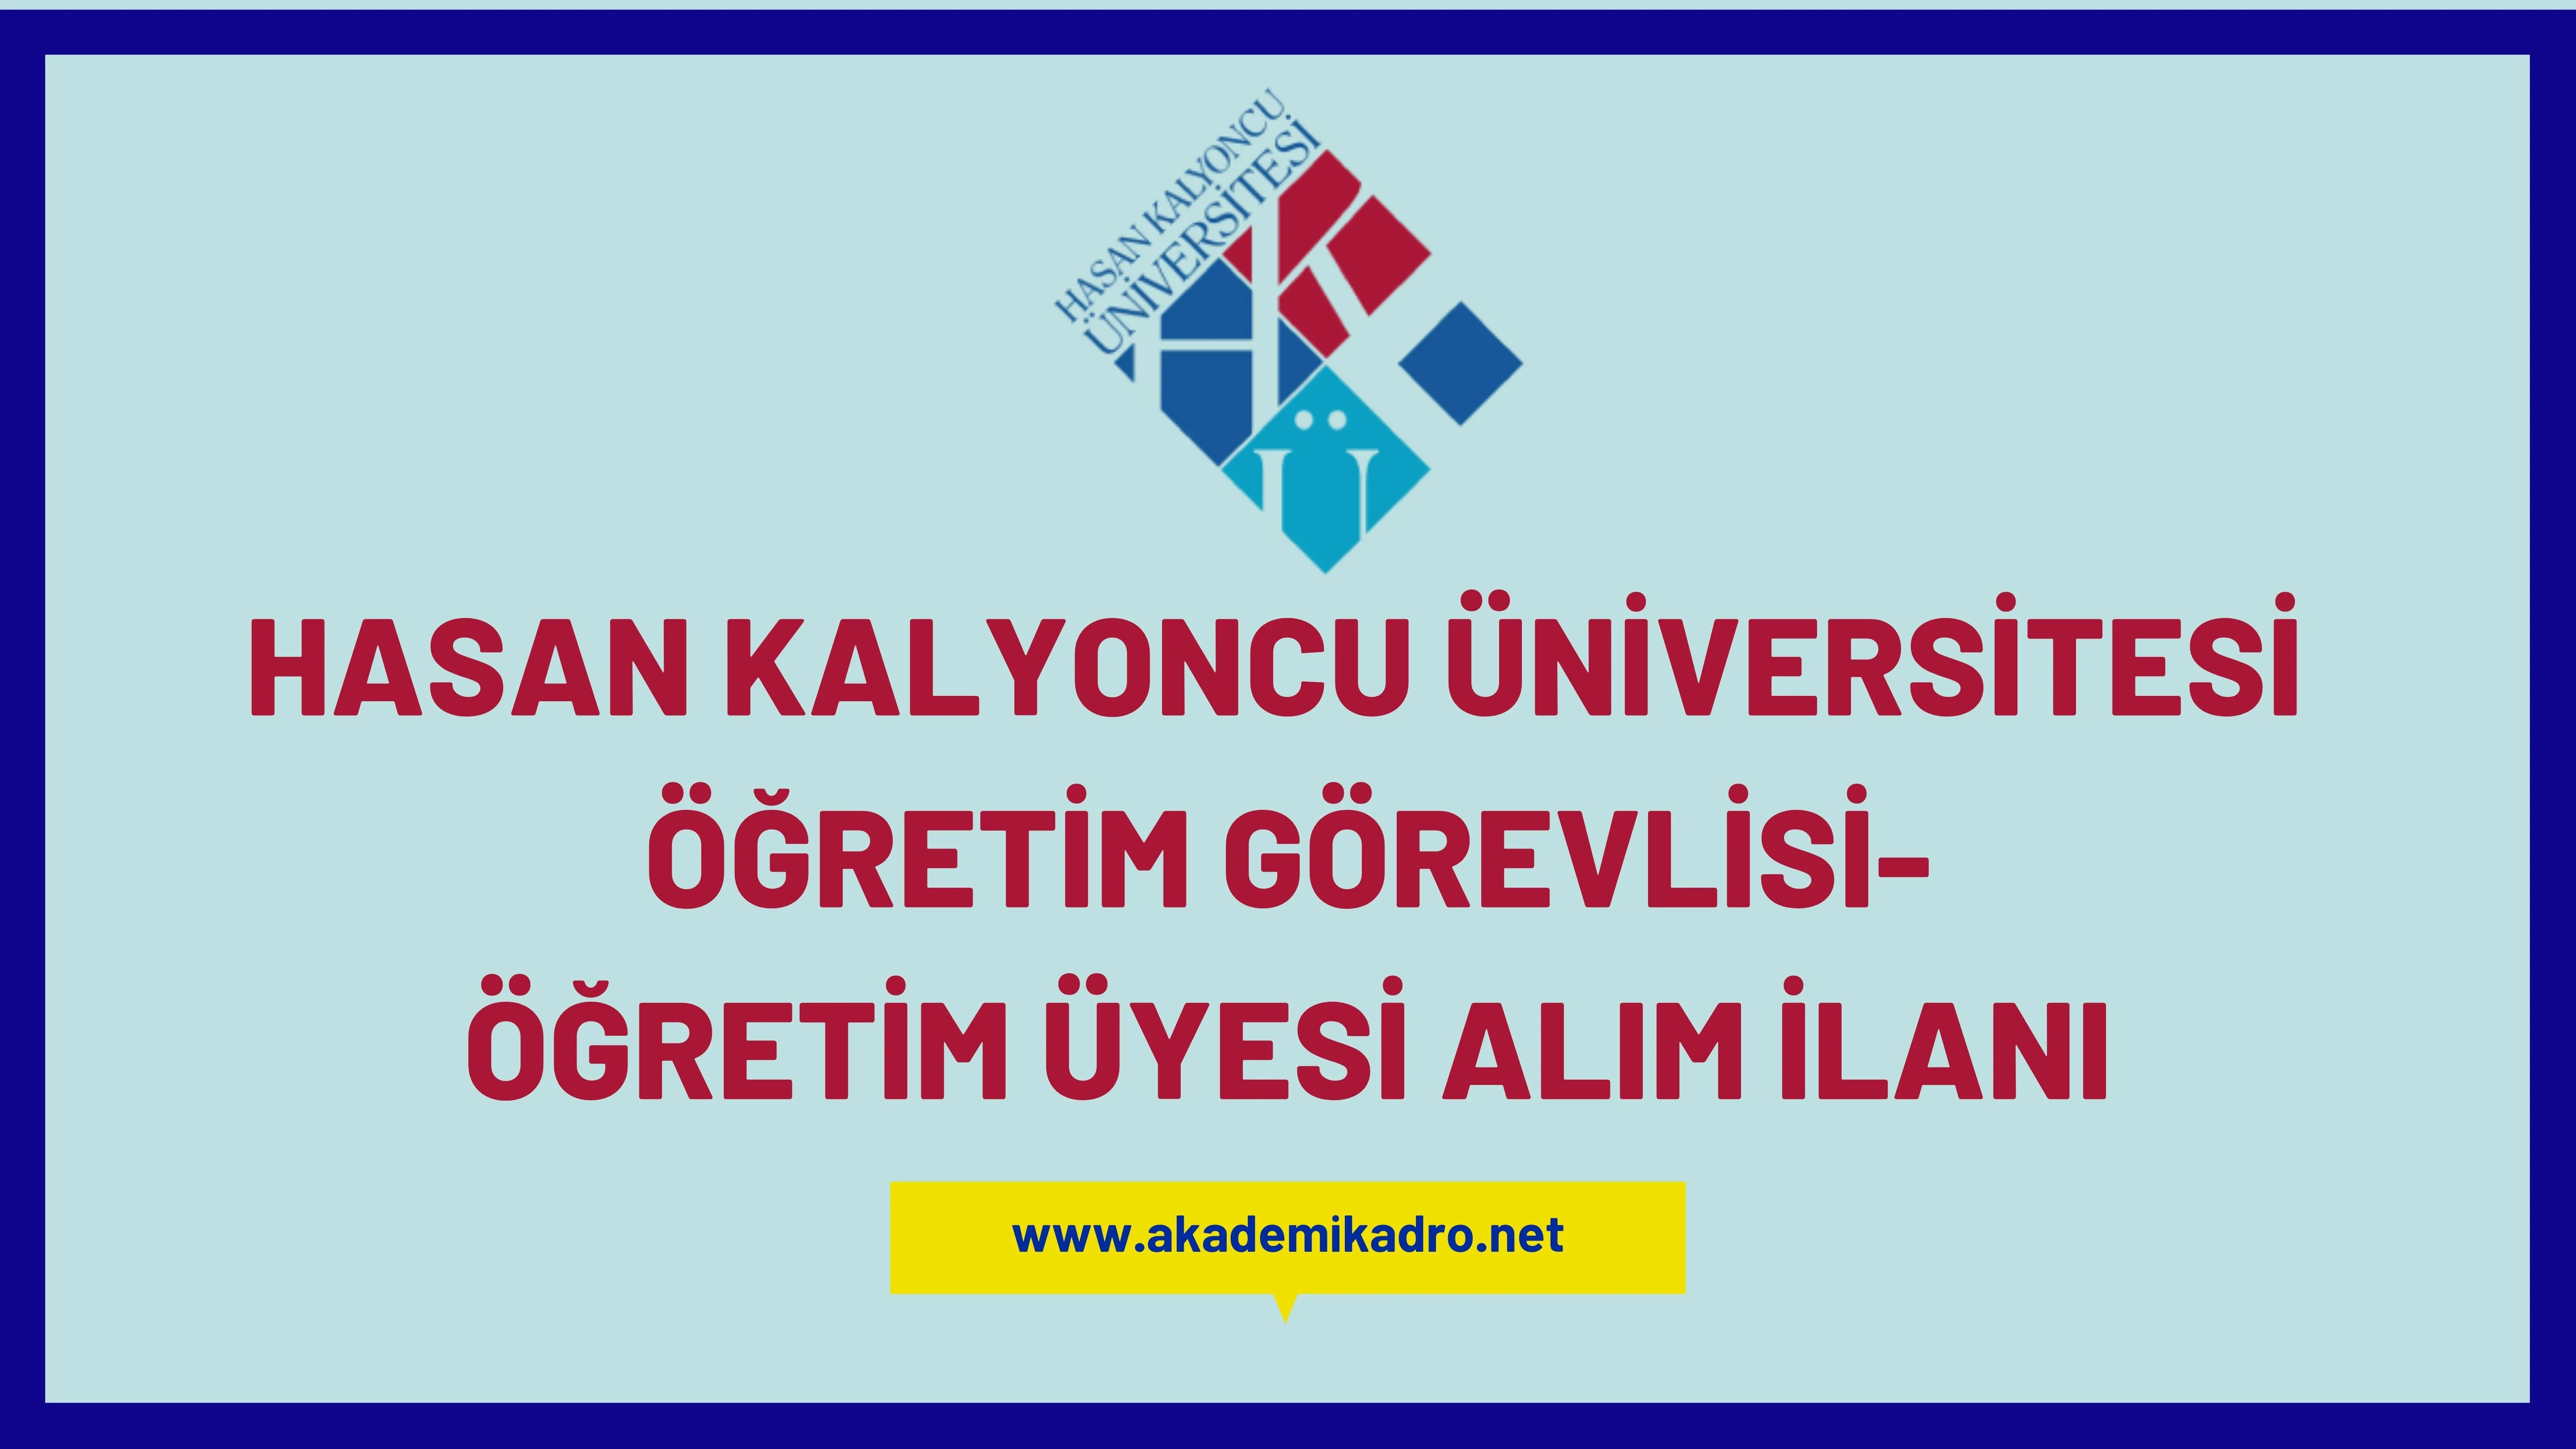 Hasan Kalyoncu Üniversitesi 25 öğretim üyesi ve öğretim görevlisi alacaktır.